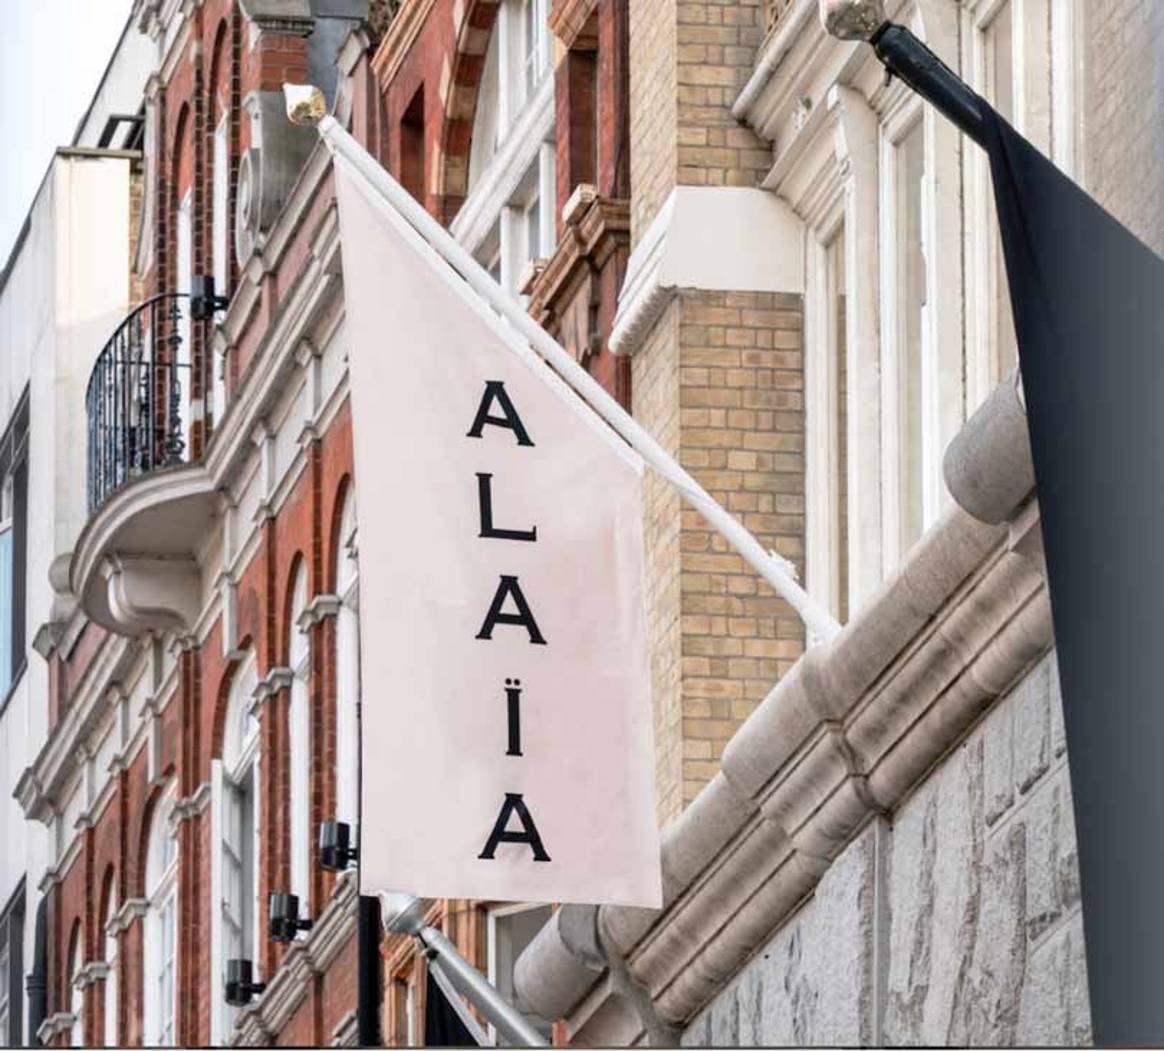 Binnenkijken bij de Alaïa winkel in Londen, eerste flagshipstore buiten Parijs